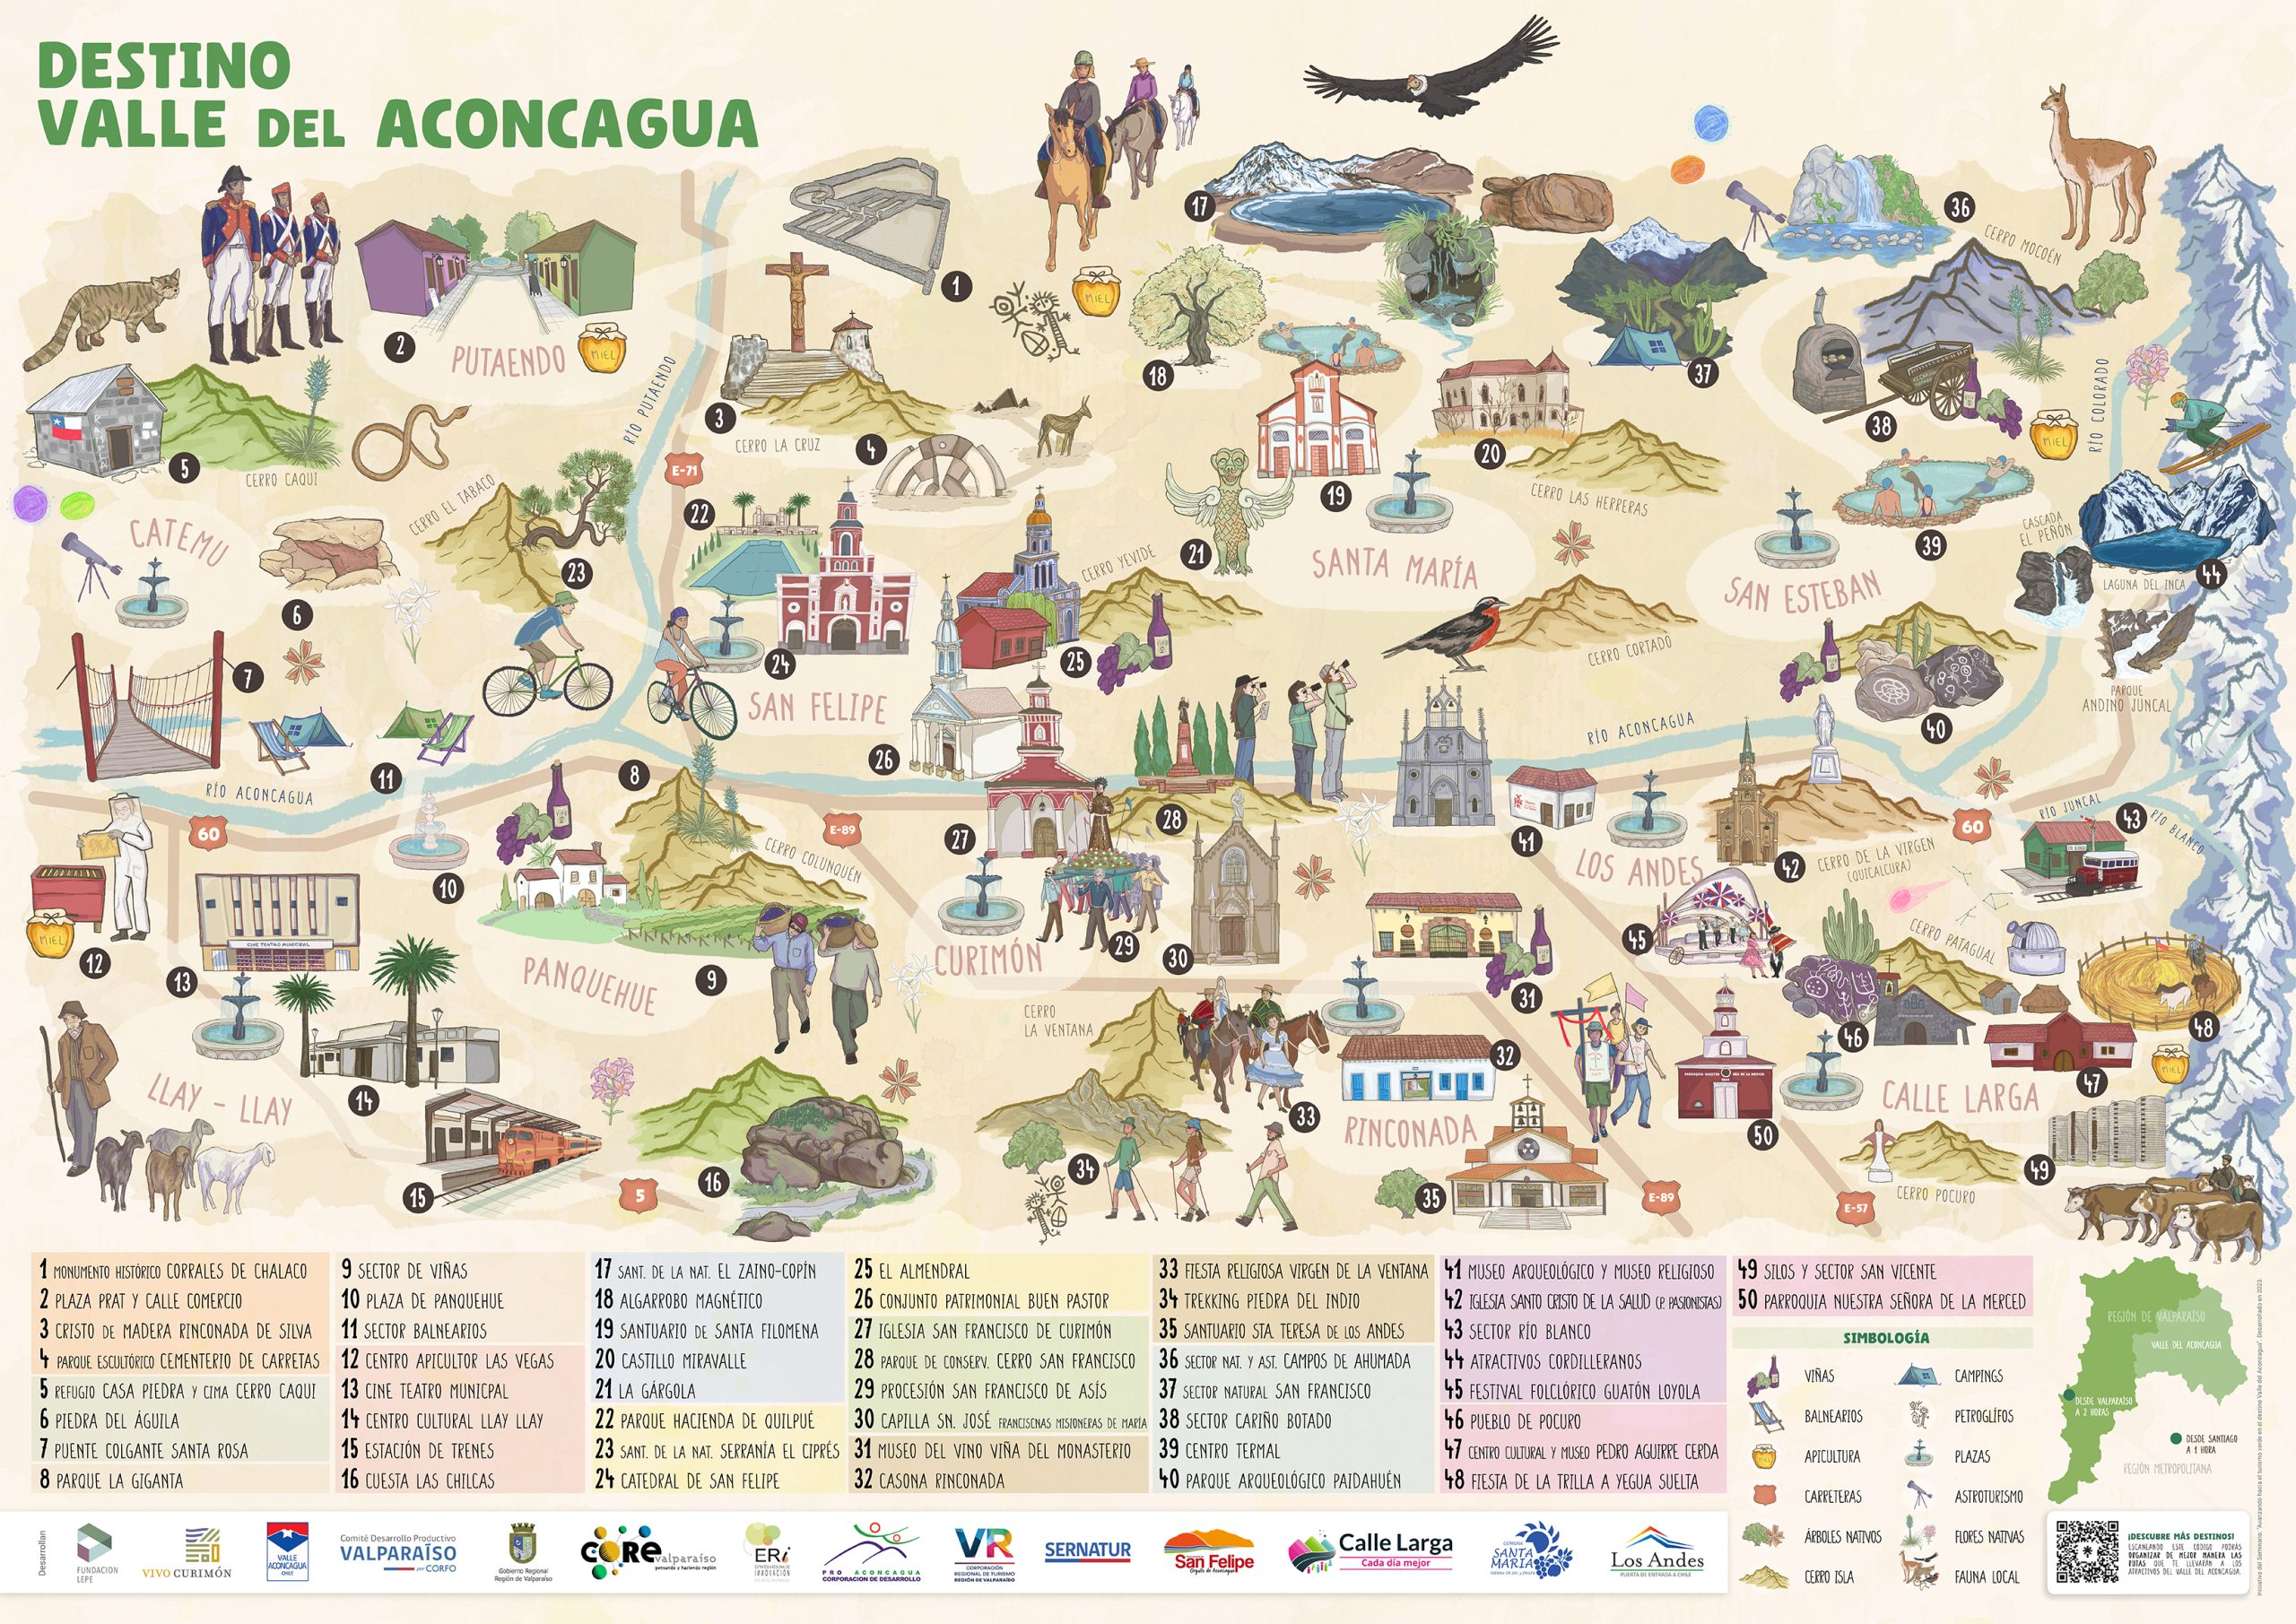 ACONCAGUA: Mapa ilustrado invita a turistas a conocer el Valle del Aconcagua